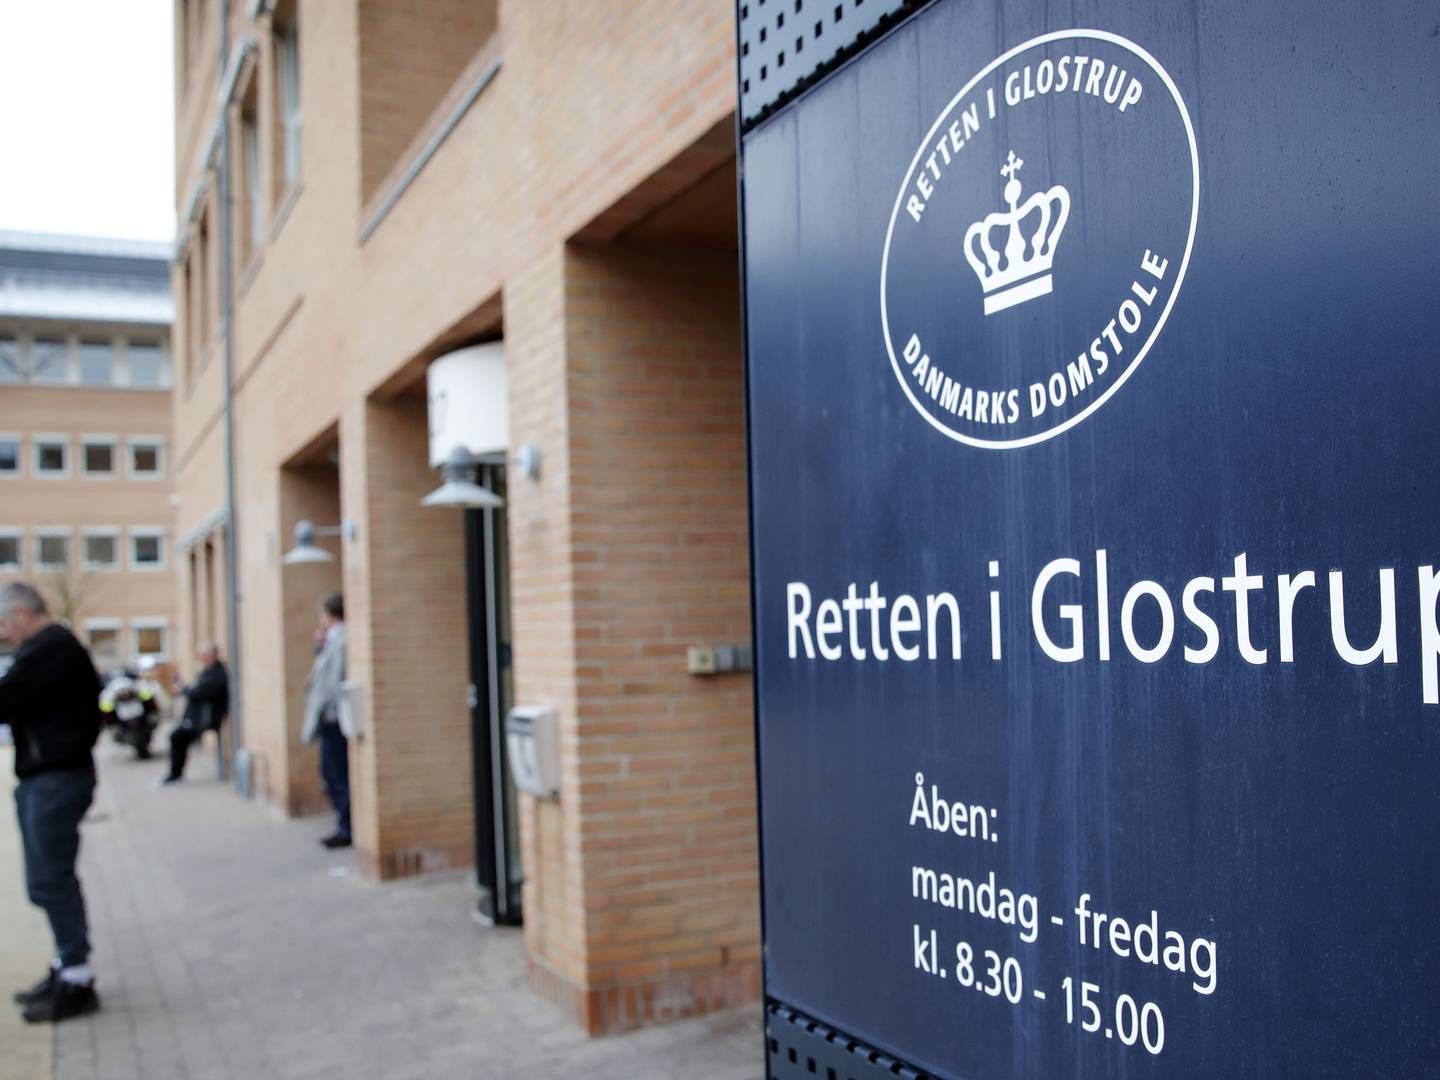 Bøden på 110 mio. kr., som bagmændendes bank North Channel Bank fra tyskland fik ved Retten i Glostrup i september, indgår i forligsbeløbet på 1,6 mia. kr. | Foto: Jens Dresling